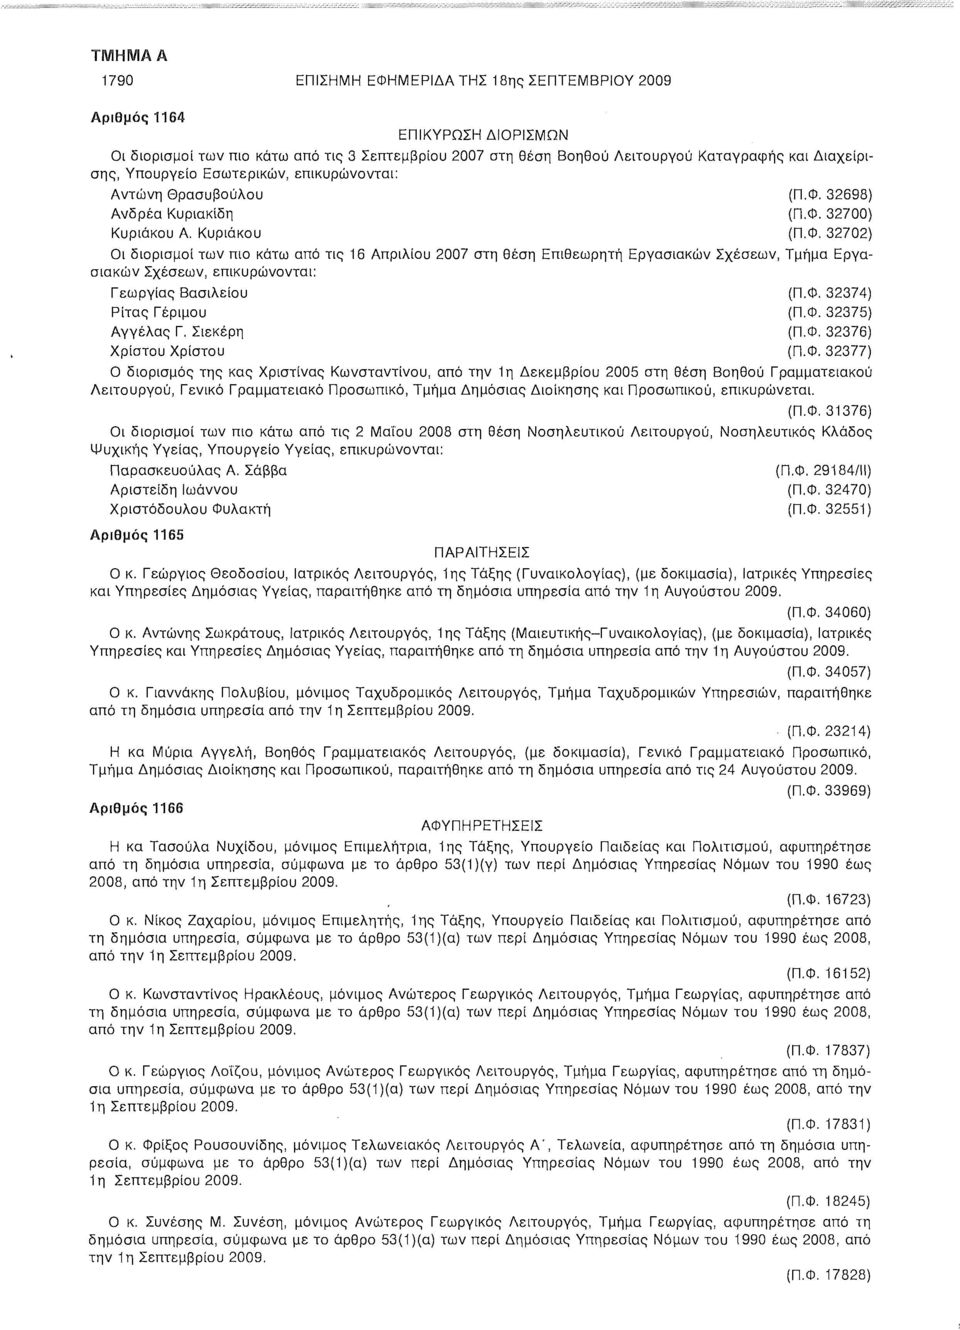 32698) Ανδρέα Κυριακίδη (Π.Φ. 32700) Κυριάκου Α. Κυριάκου (Π.Φ. 32702) Οι διορισμοί των πιο κάτω από τις 16 Απριλίου 2007 στη θέση Επιθεωρητή Εργασιακών Σχέσεων, Τμήμα Εργασιακών Σχέσεων, επικυρώνονται: Γεωργίας Βασιλείου (Π.